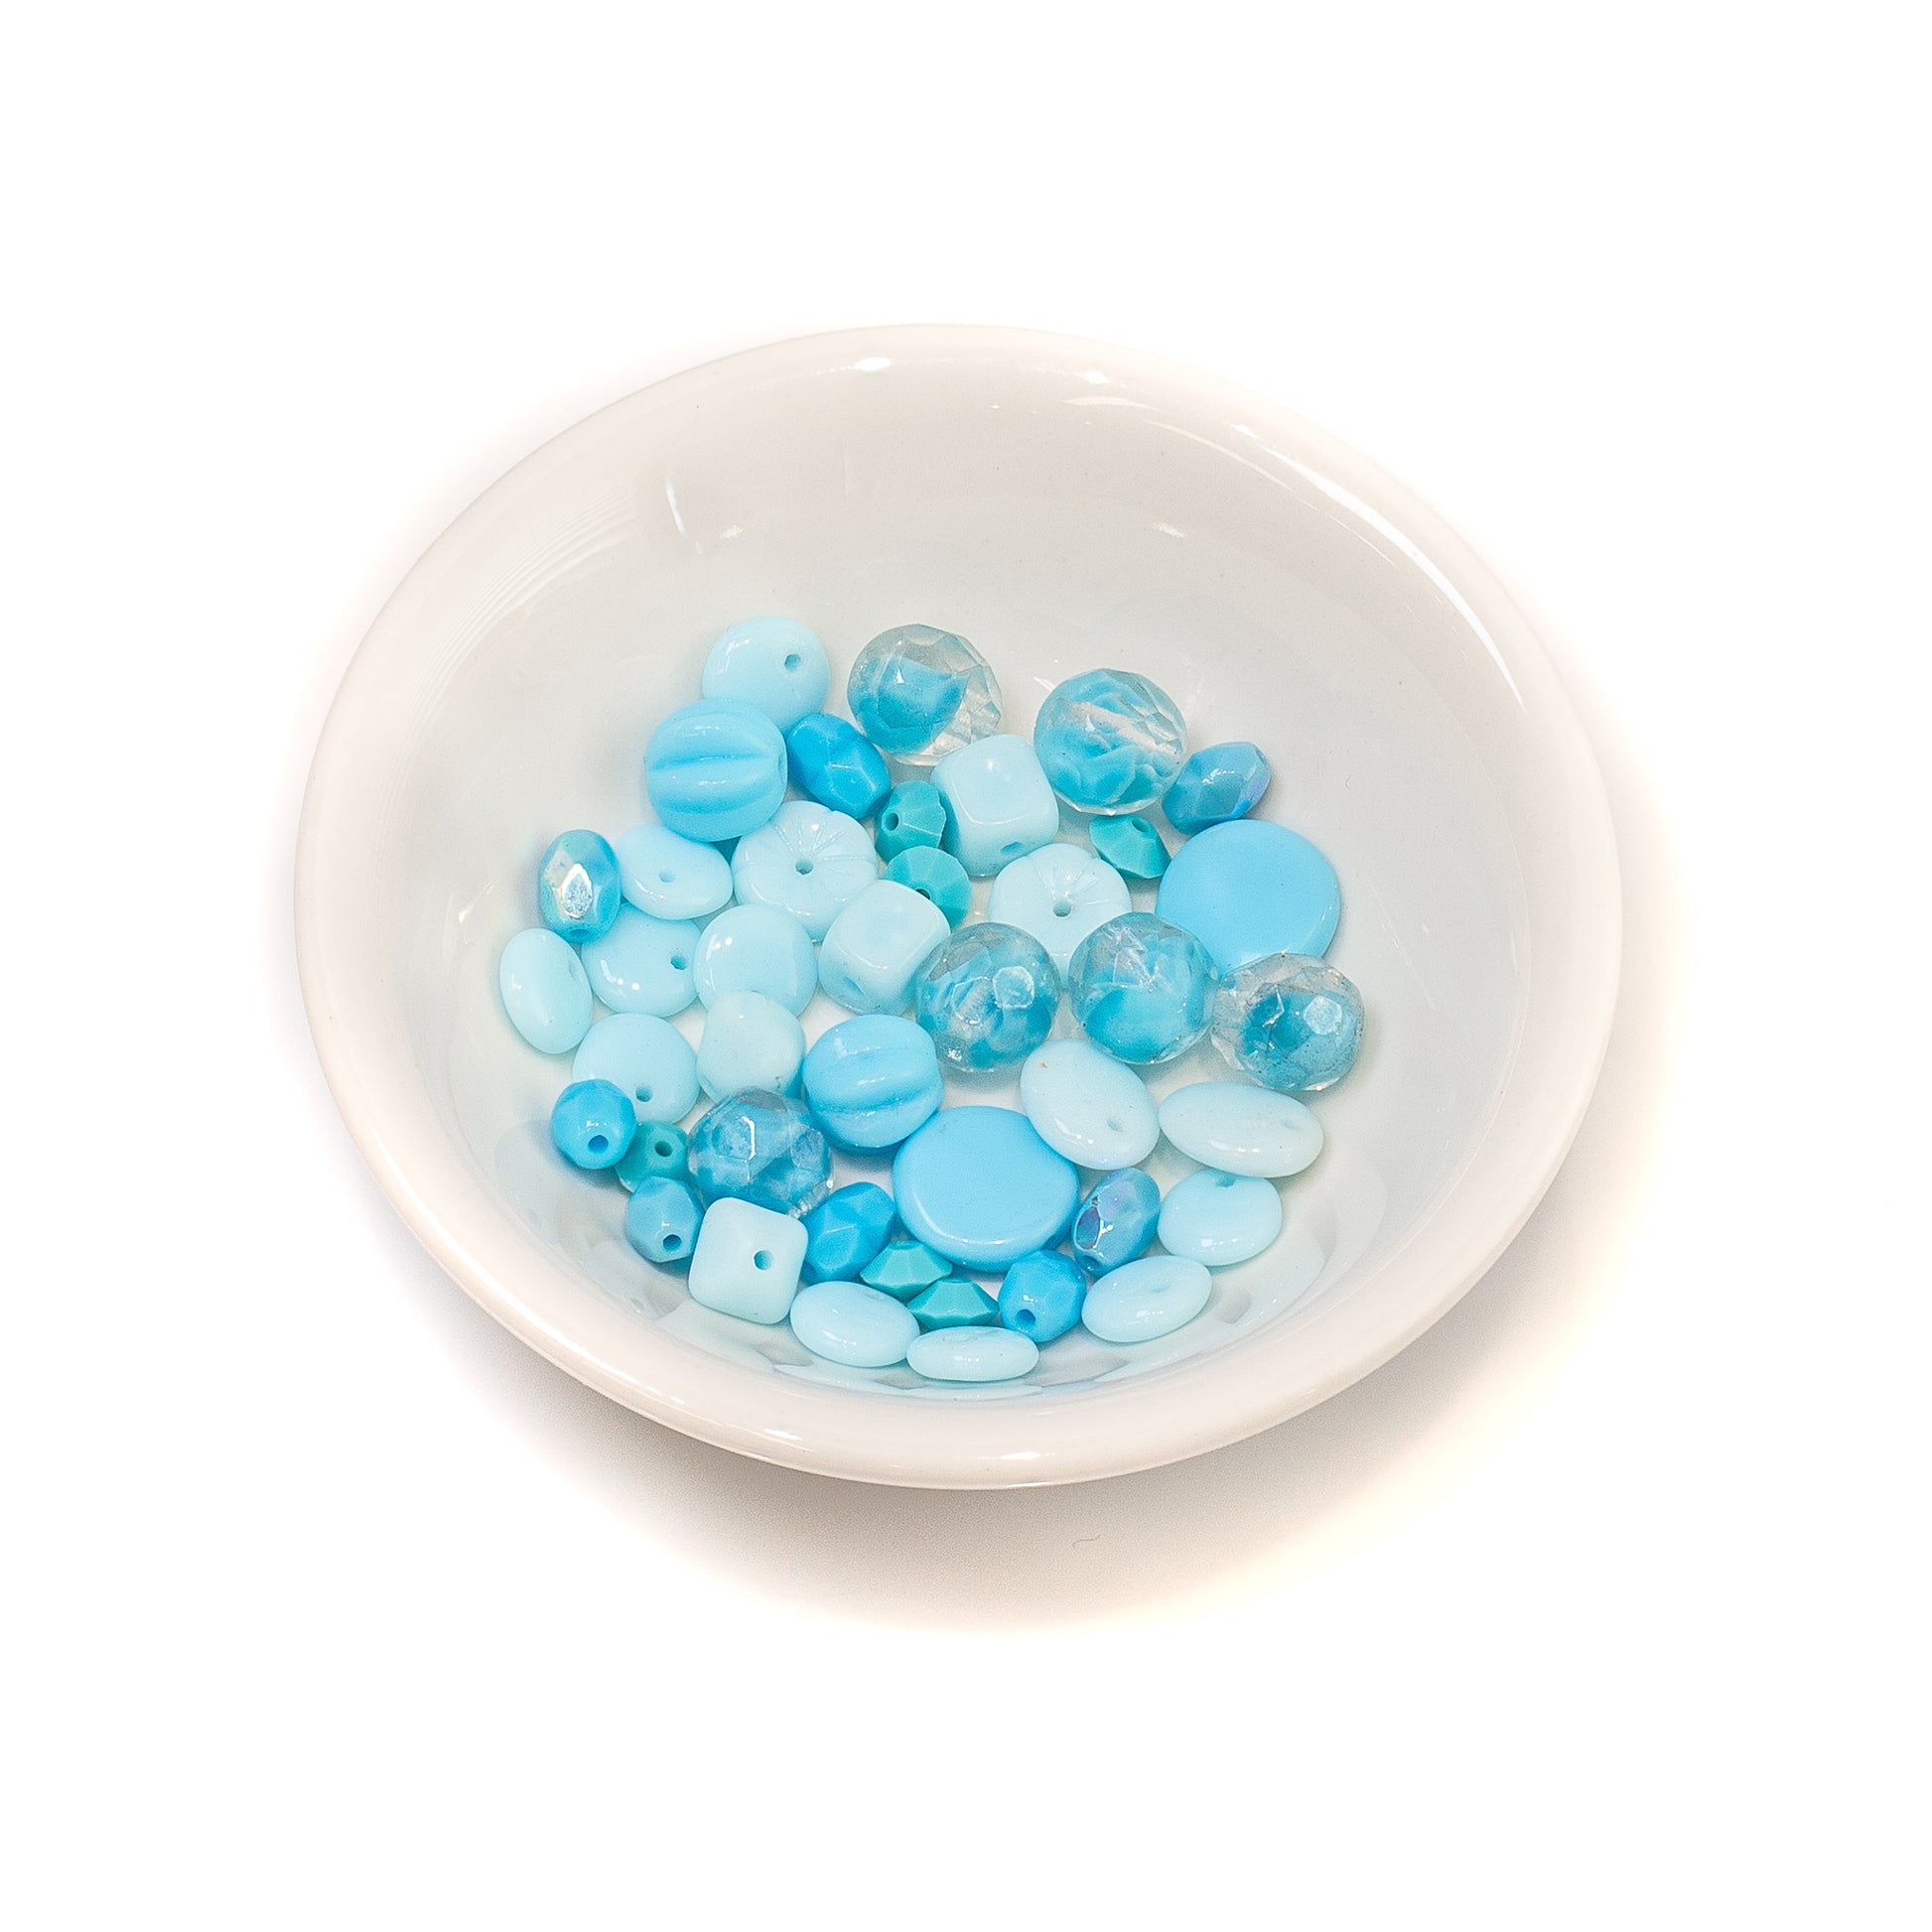 Vintage Aqua Glass Bead Mixes - Appox. 40 pcs.